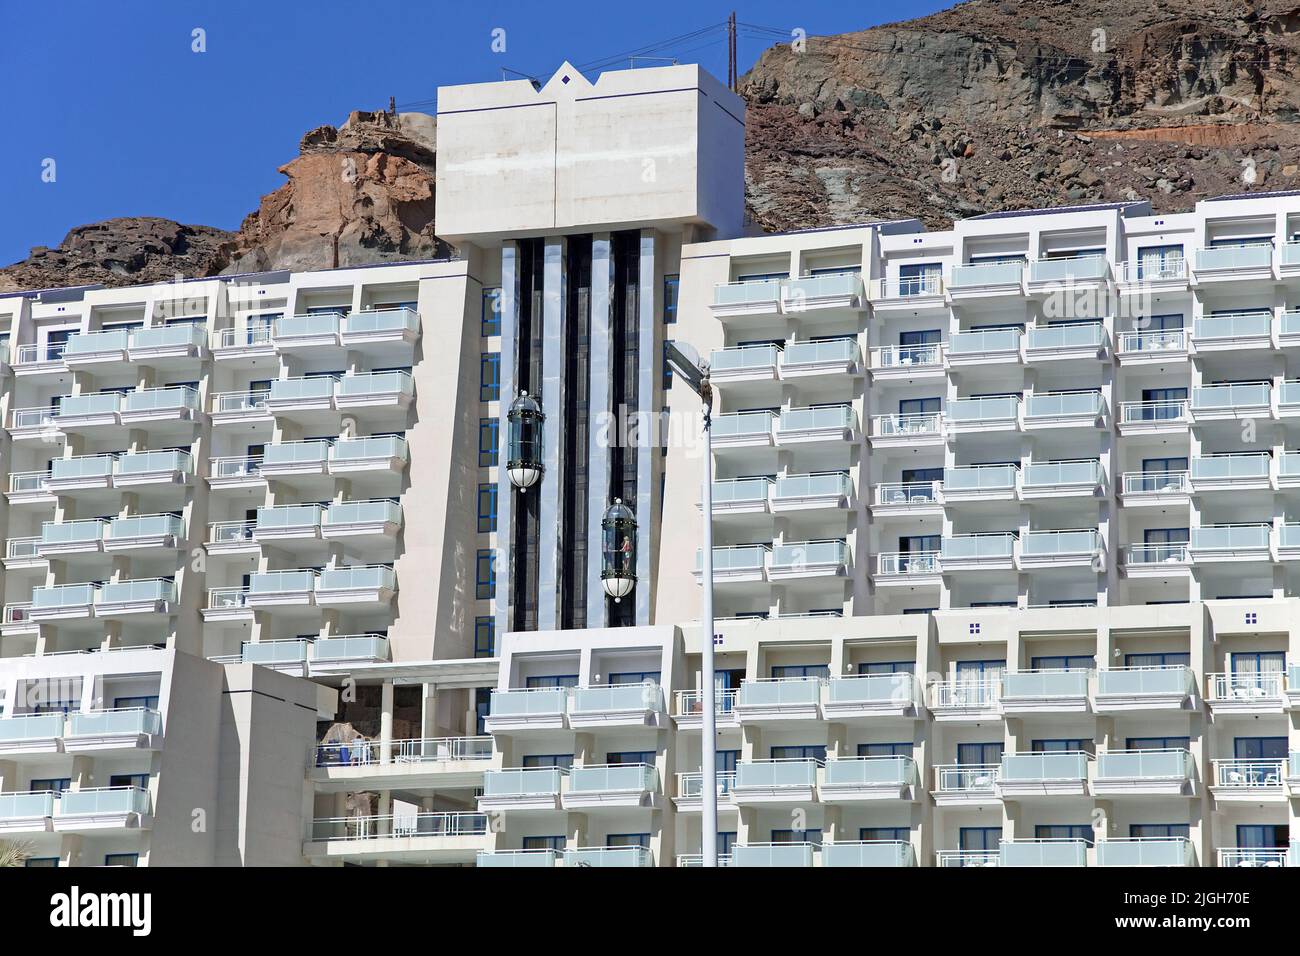 Hotelaufzug, große Hotelanlage in Taurito, Kanarische Inseln, Spanien, Europa Stockfoto